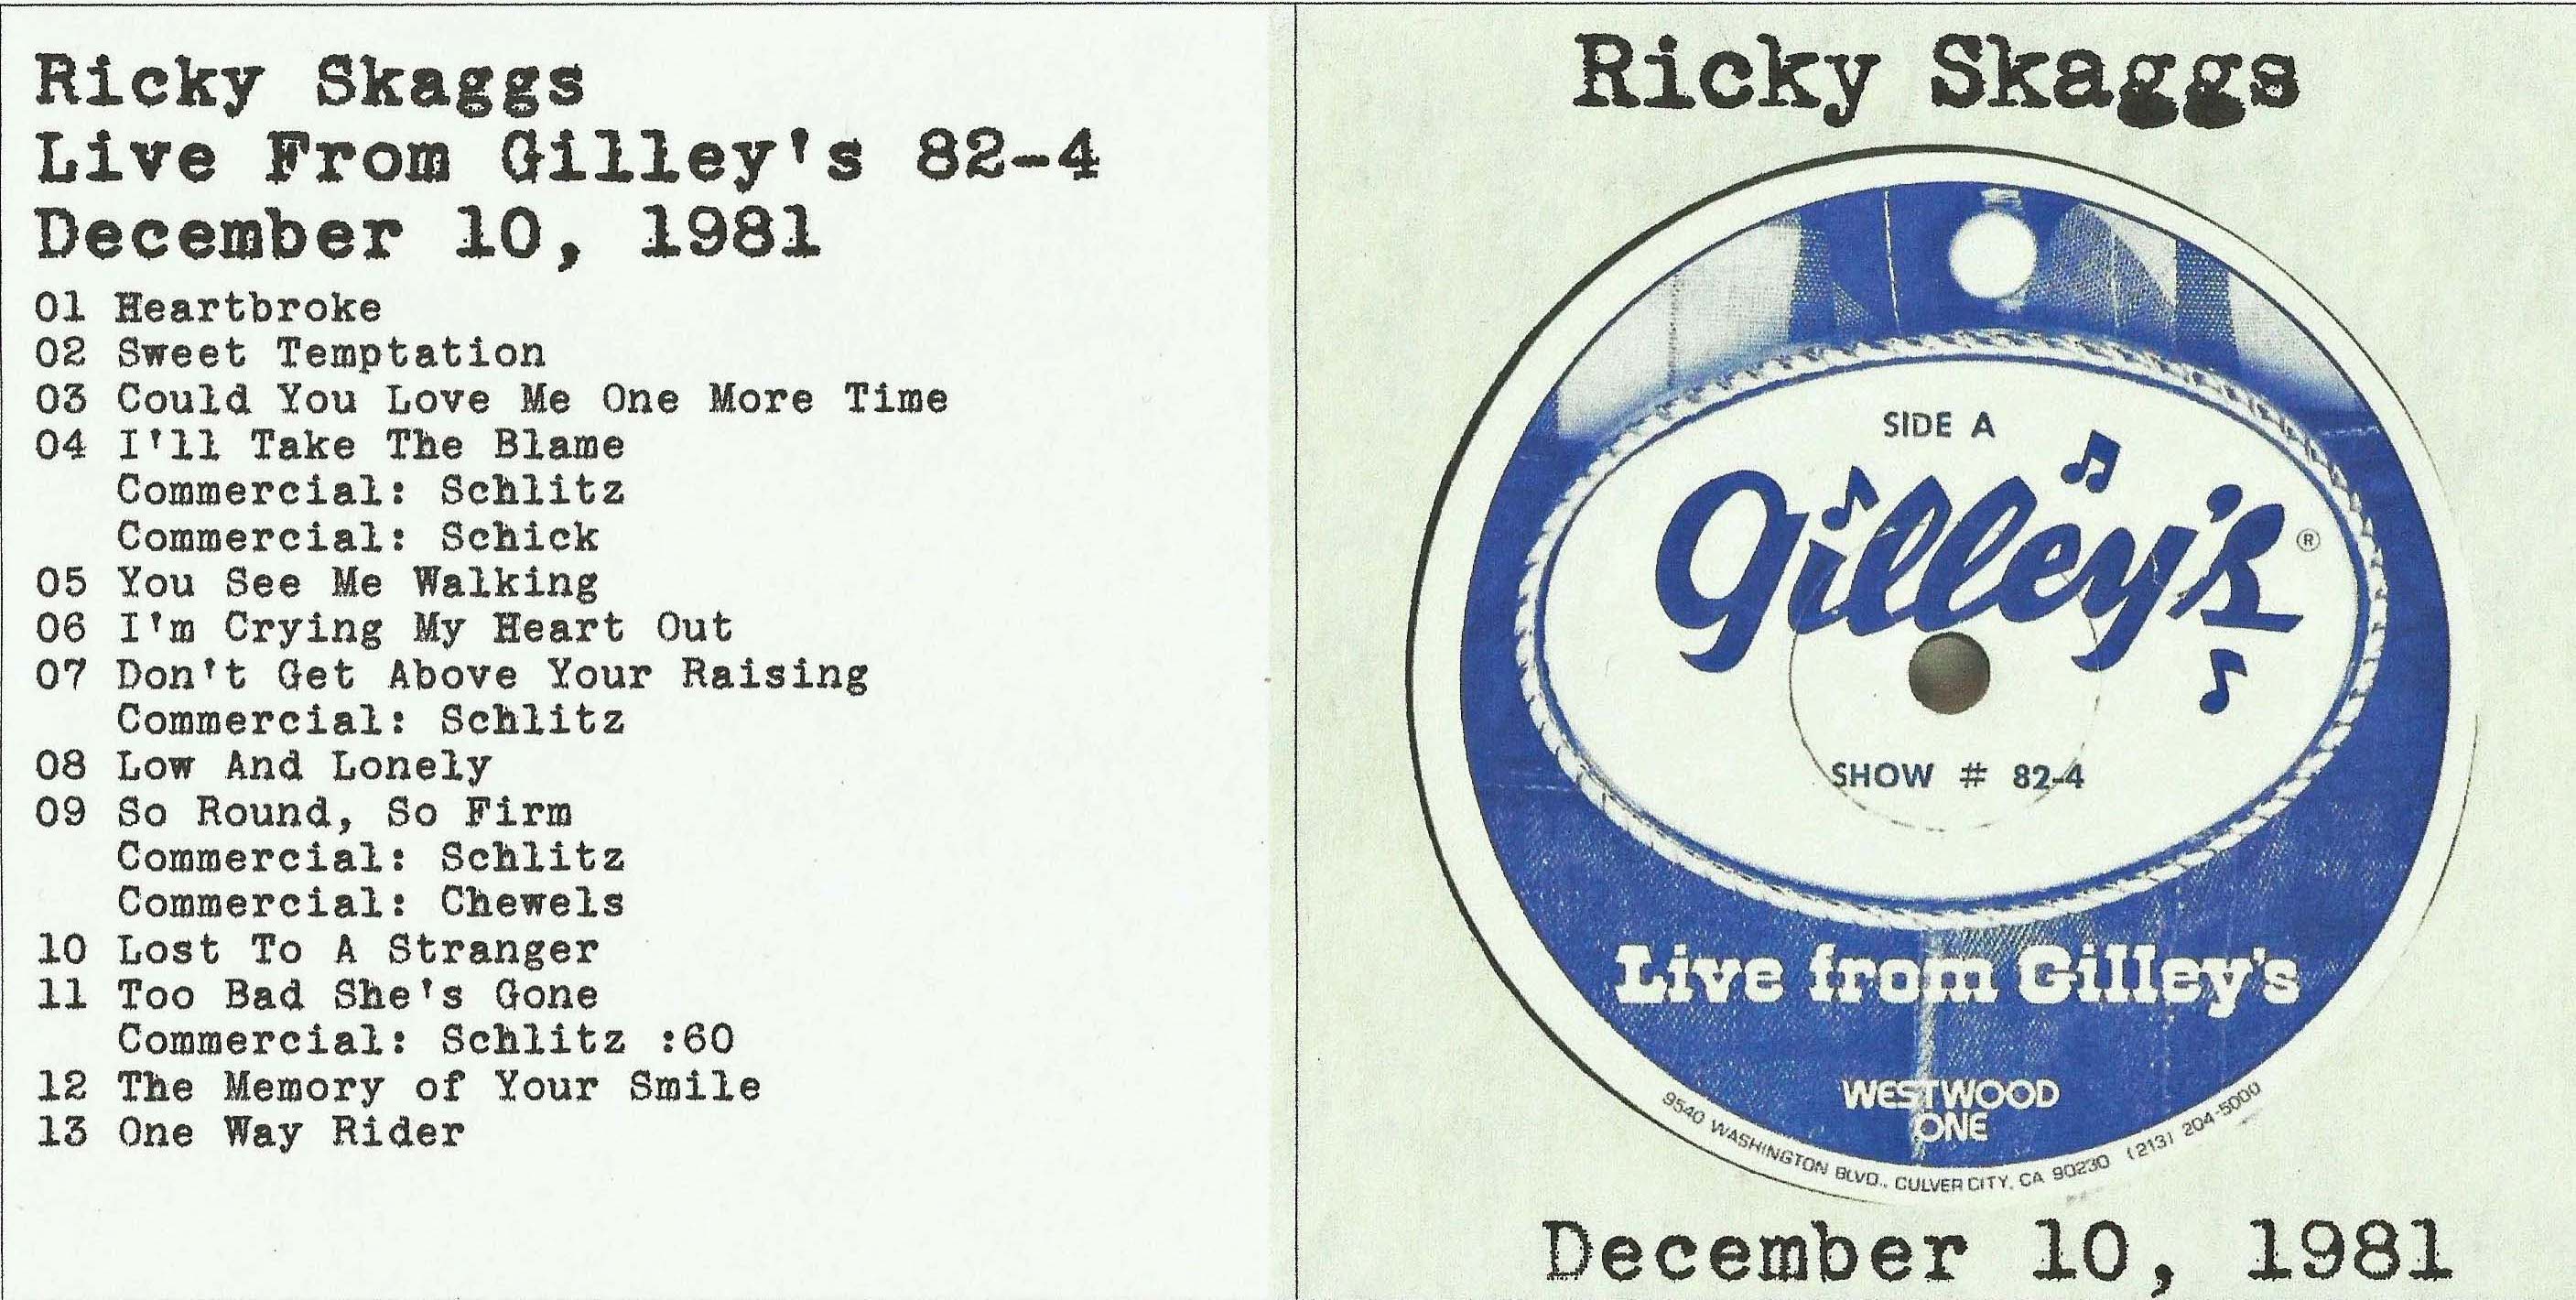 RickySkaggs1981-12-10GilleysPasadenaTX (1).jpg